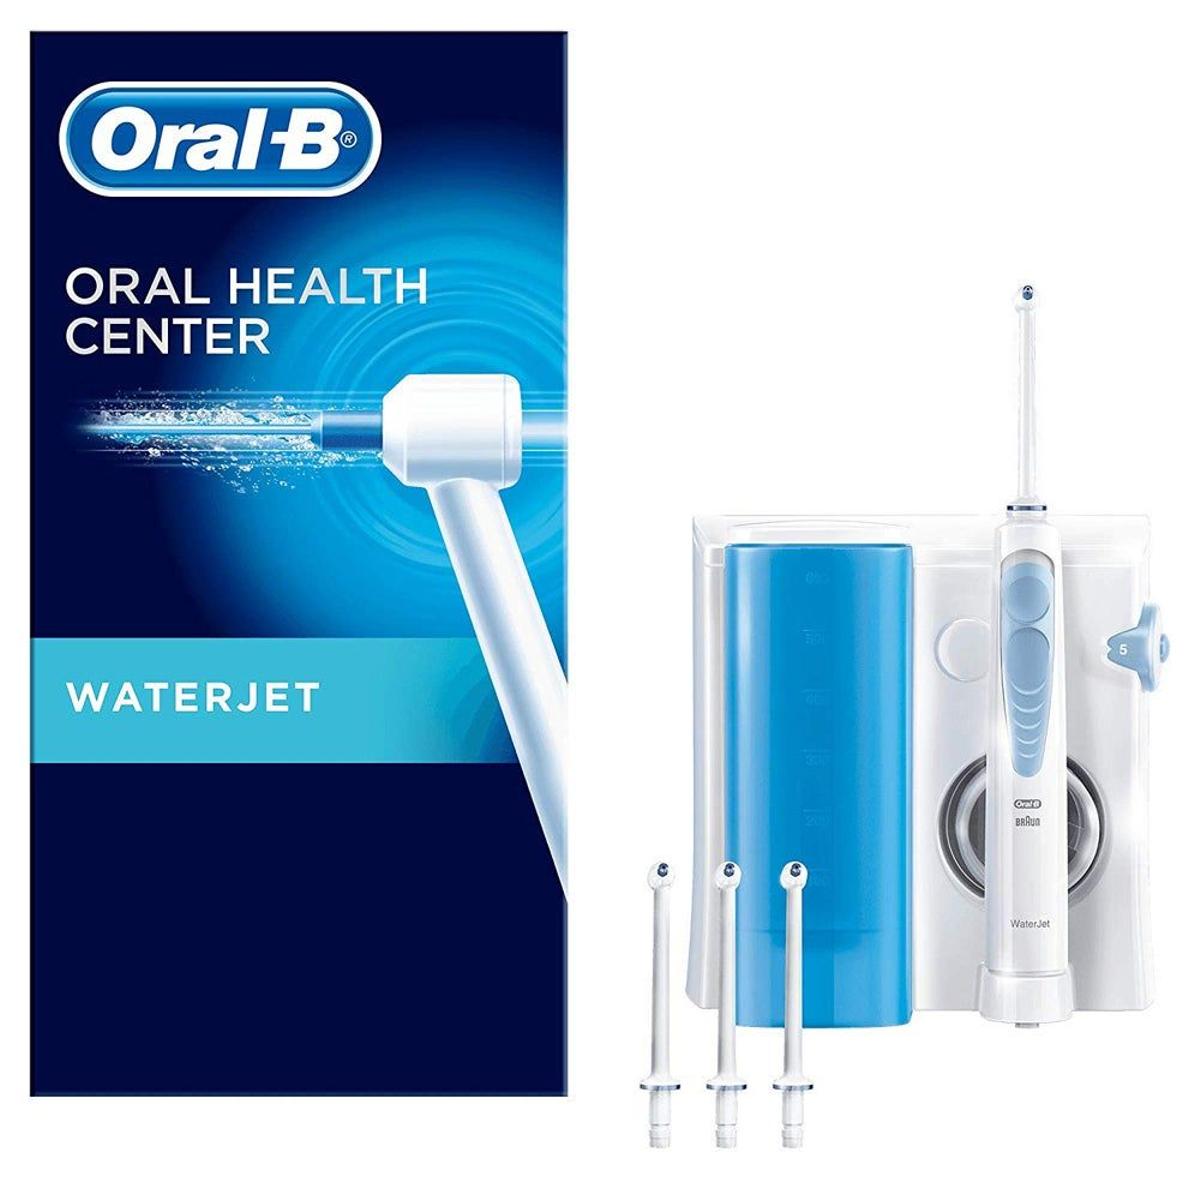 Sistema de Limpieza Bucal Oral-B Waterjet (Precio especial: 39,99 euros)